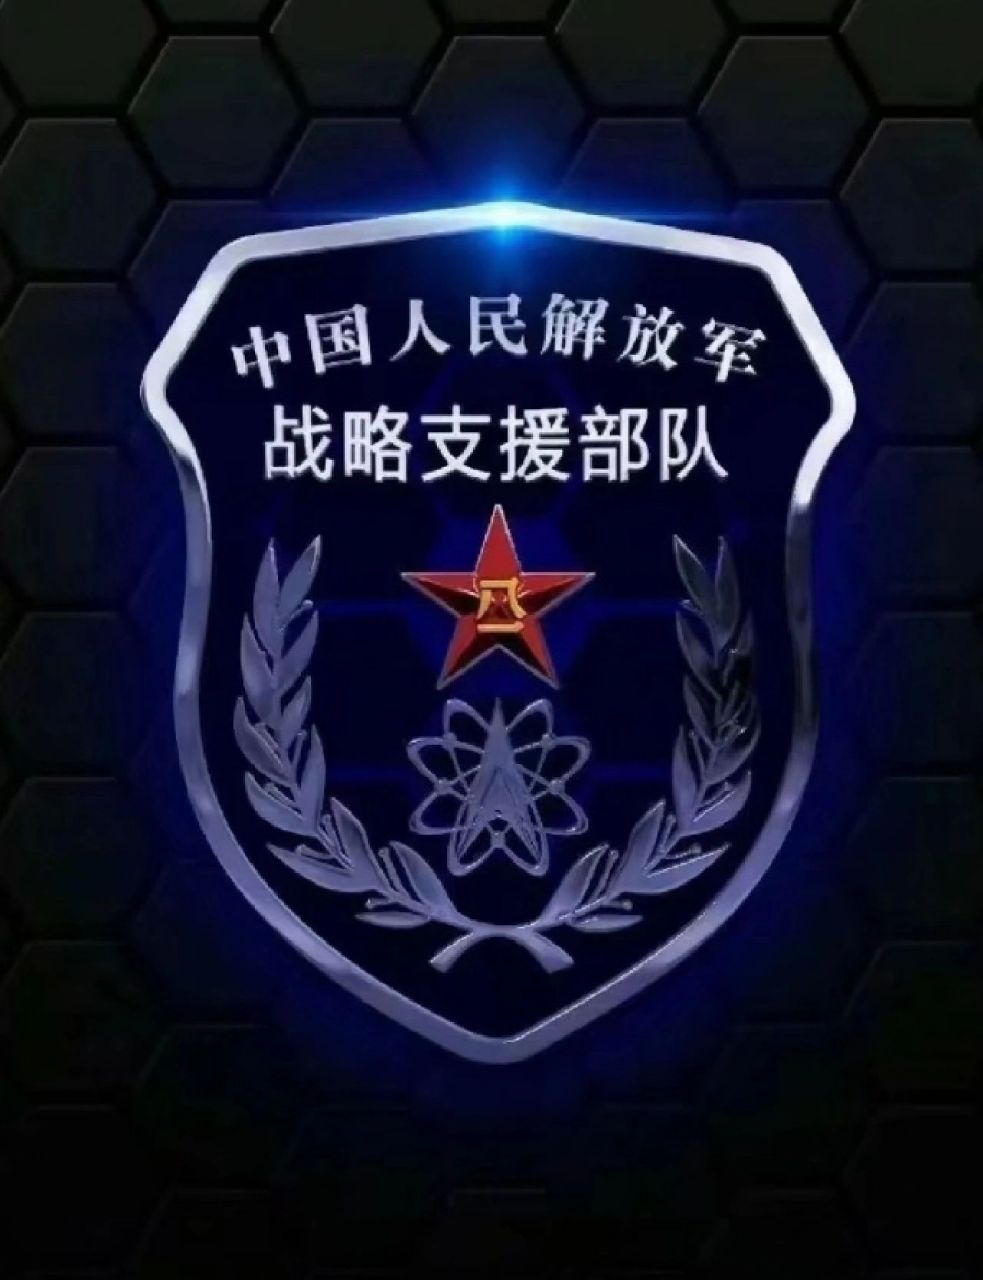 海陆空军徽图片